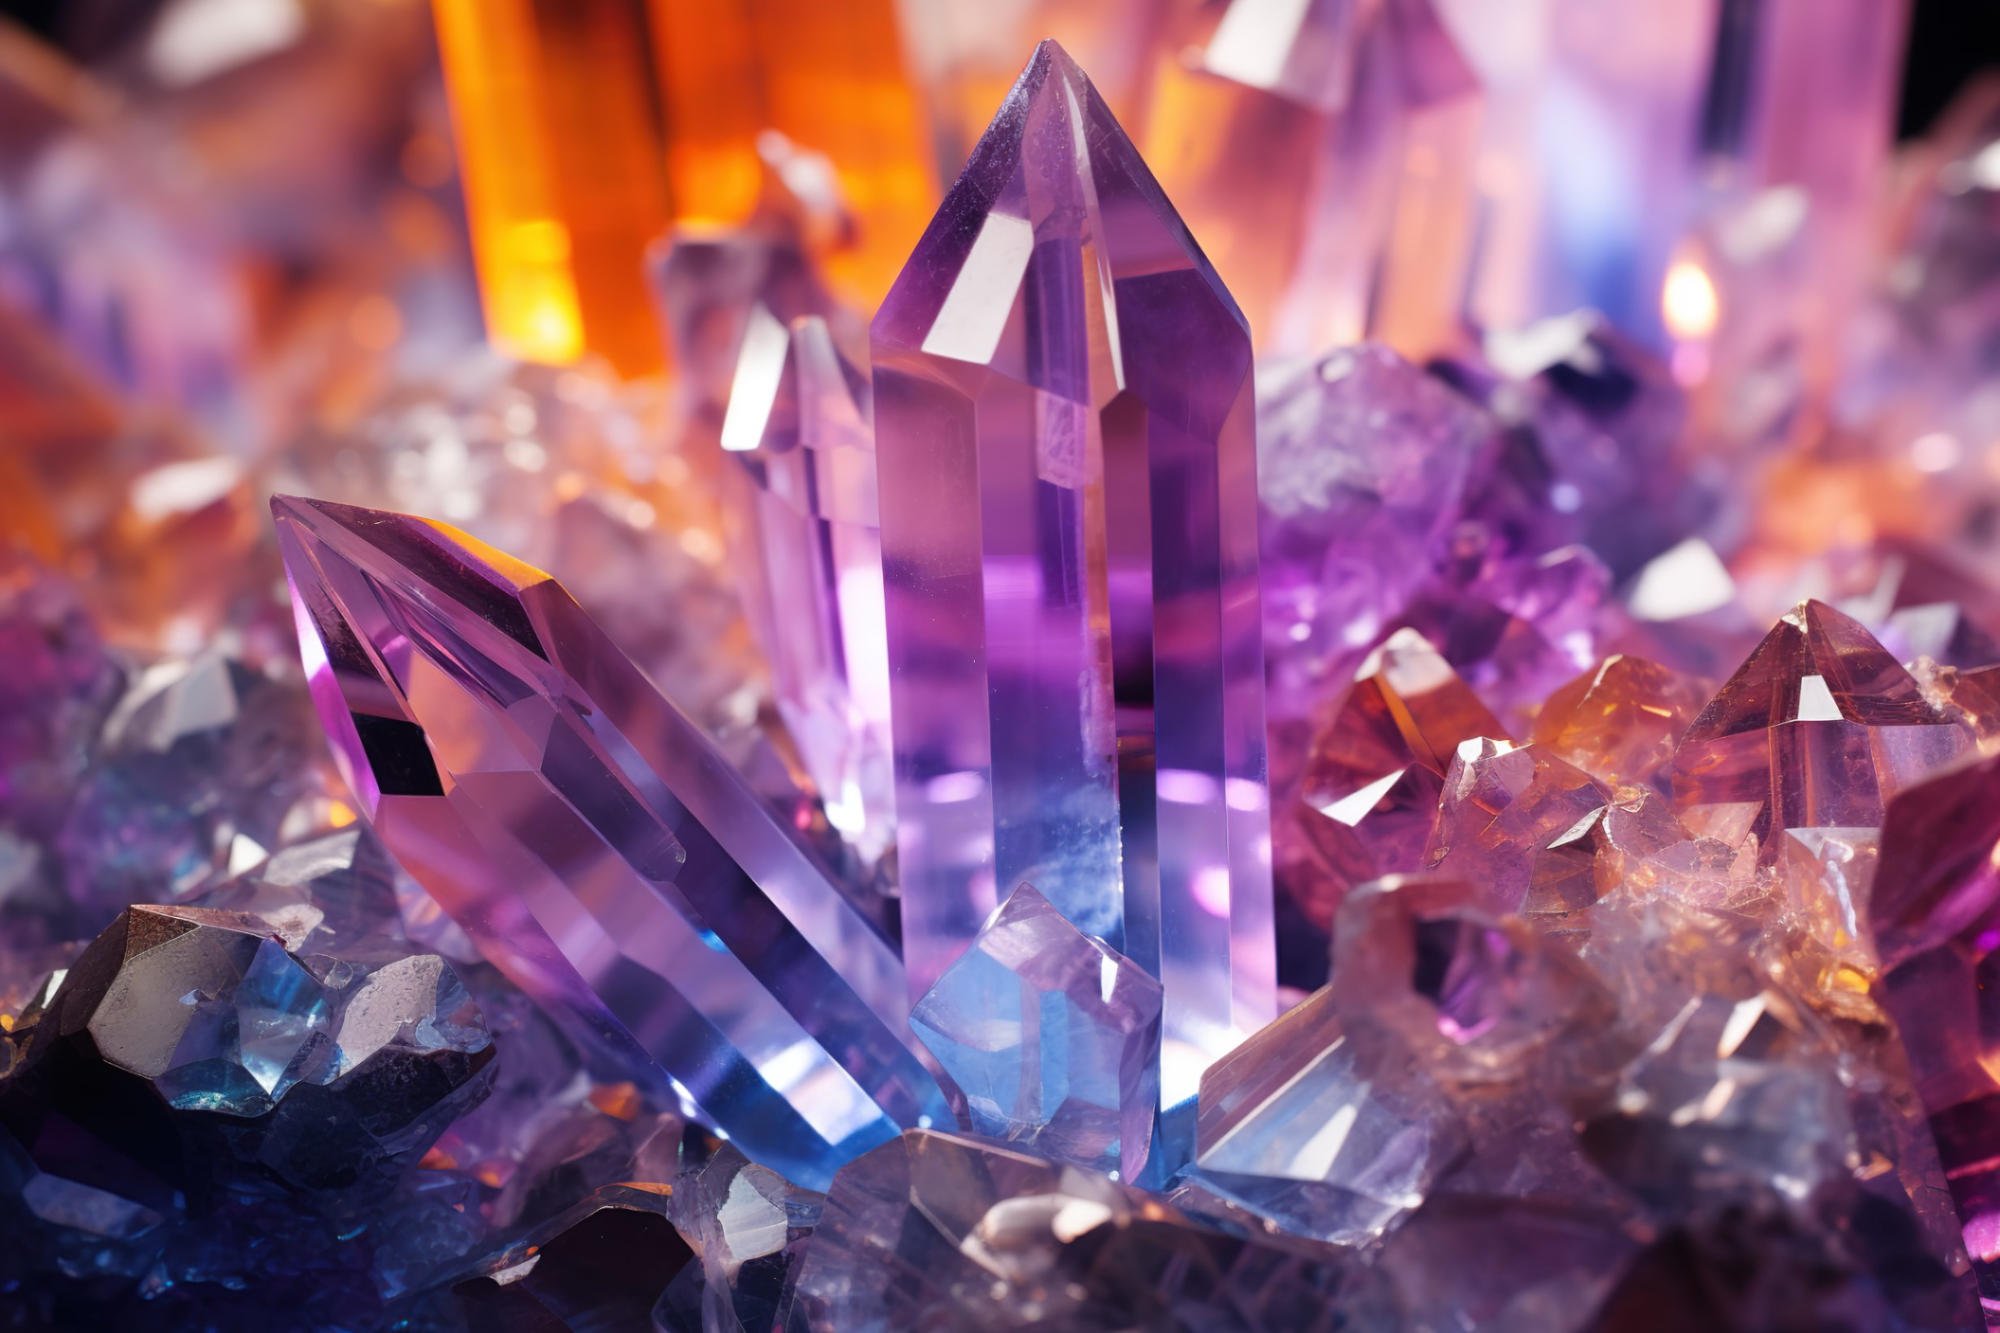 新しい発見が結晶に対する私たちの理解を変える